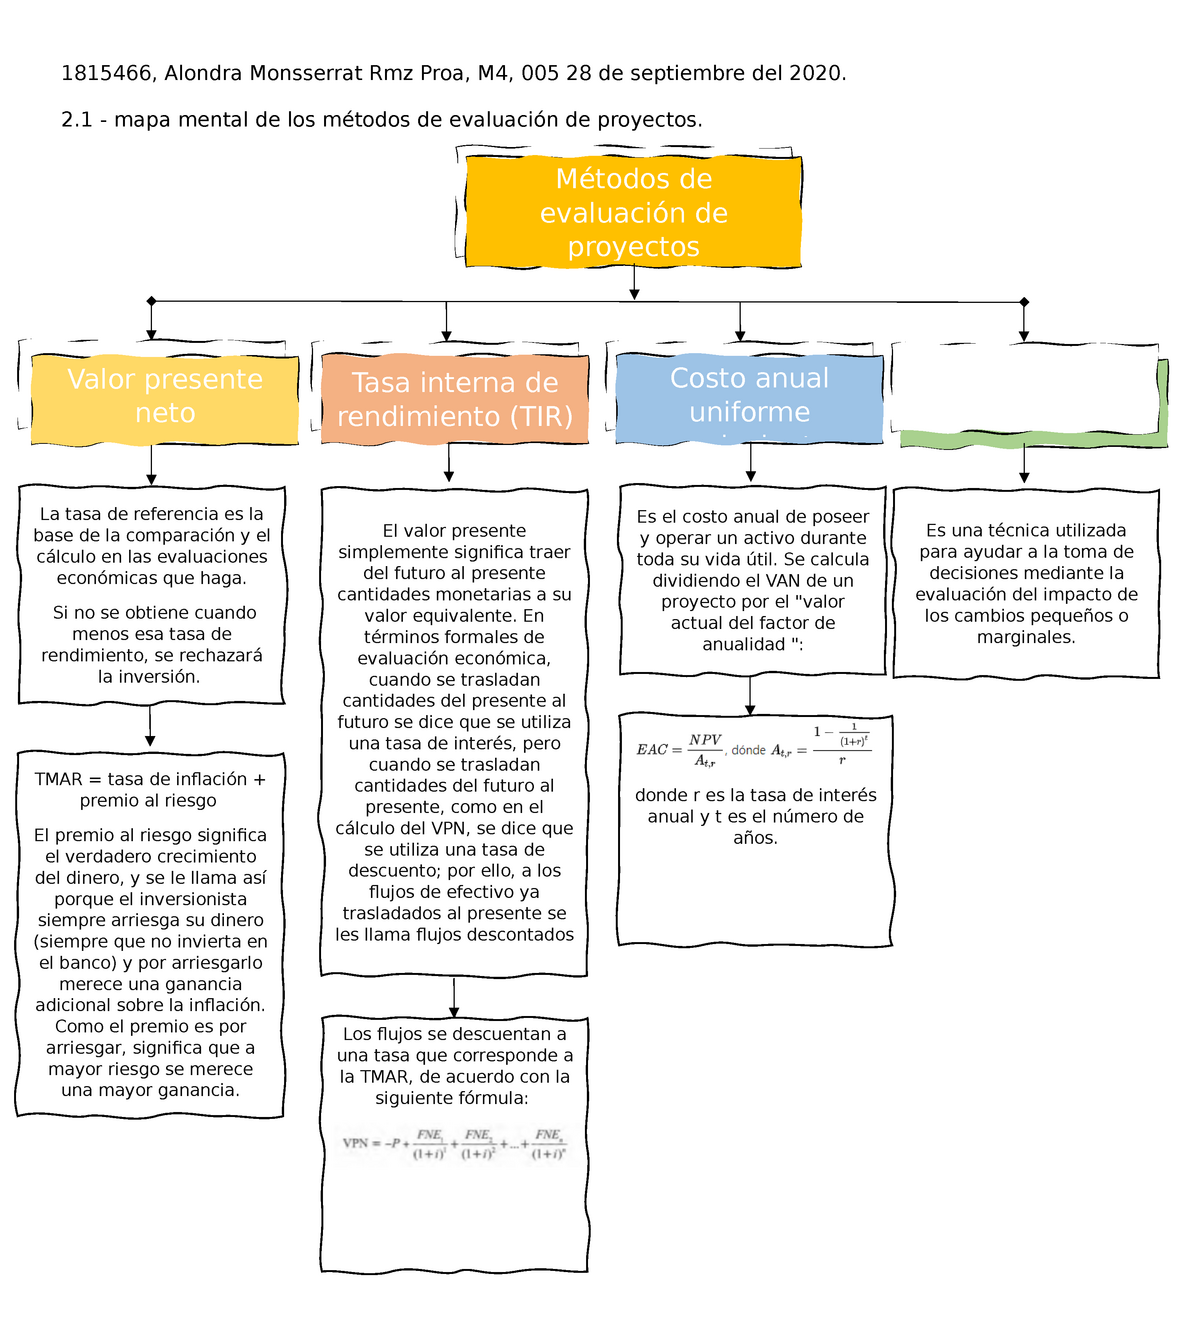 Mapa mental de metodos de evaluacion de proyectos - Análisis incremental El  valor presente - Studocu